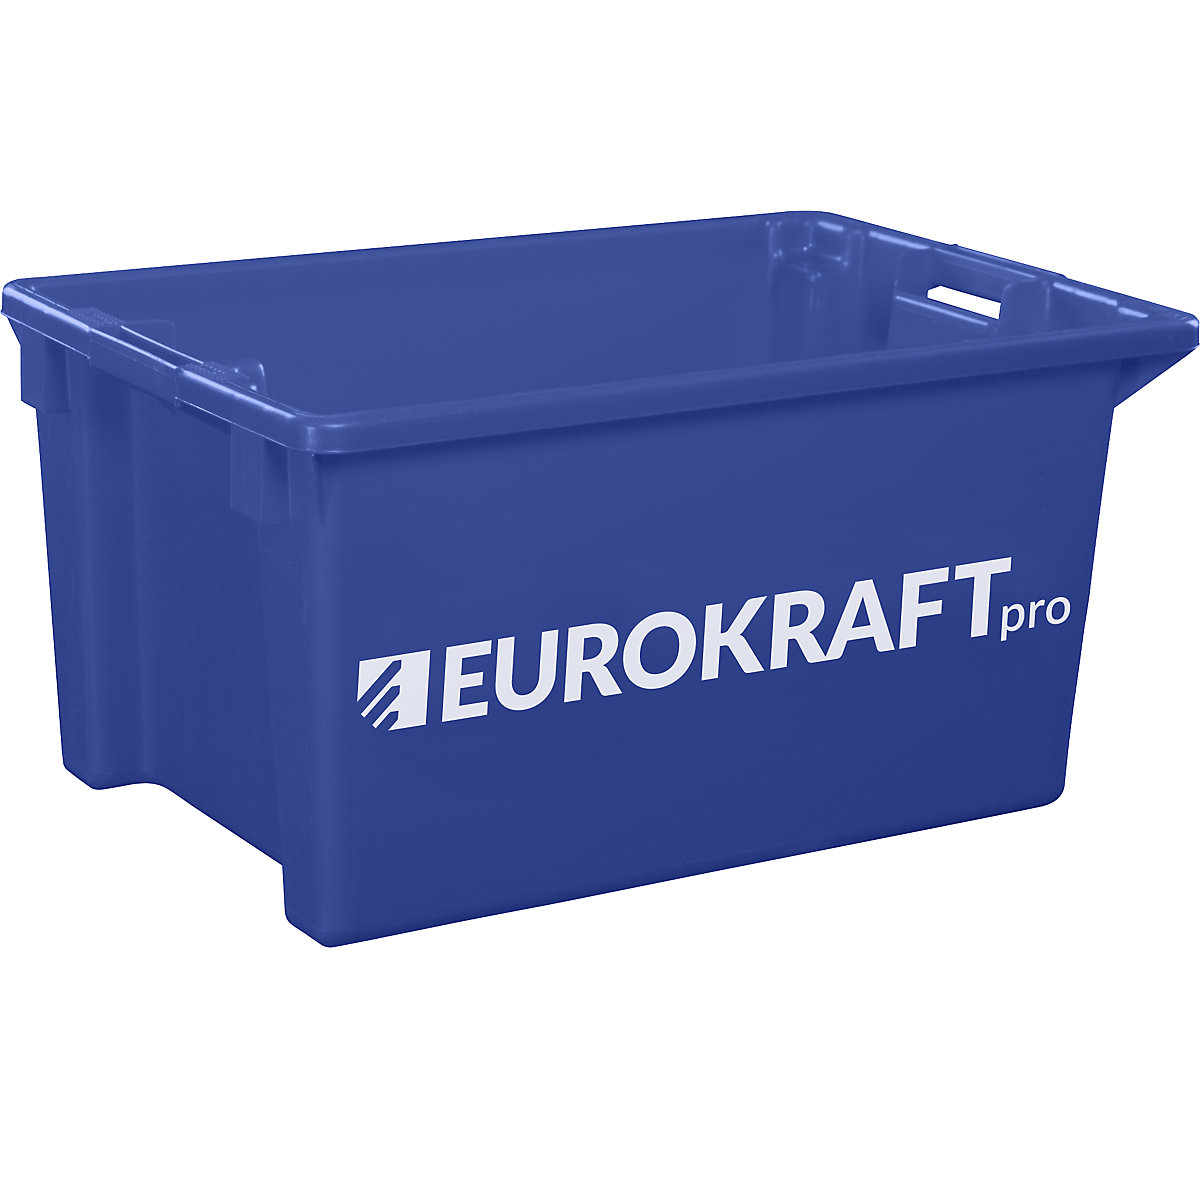 EUROKRAFTpro – Otočná stohovací nádoba z polypropylenu vhodného pro potraviny, obsah 70 litrů, bal.j. 2 ks, stěny a dno plné, modrá